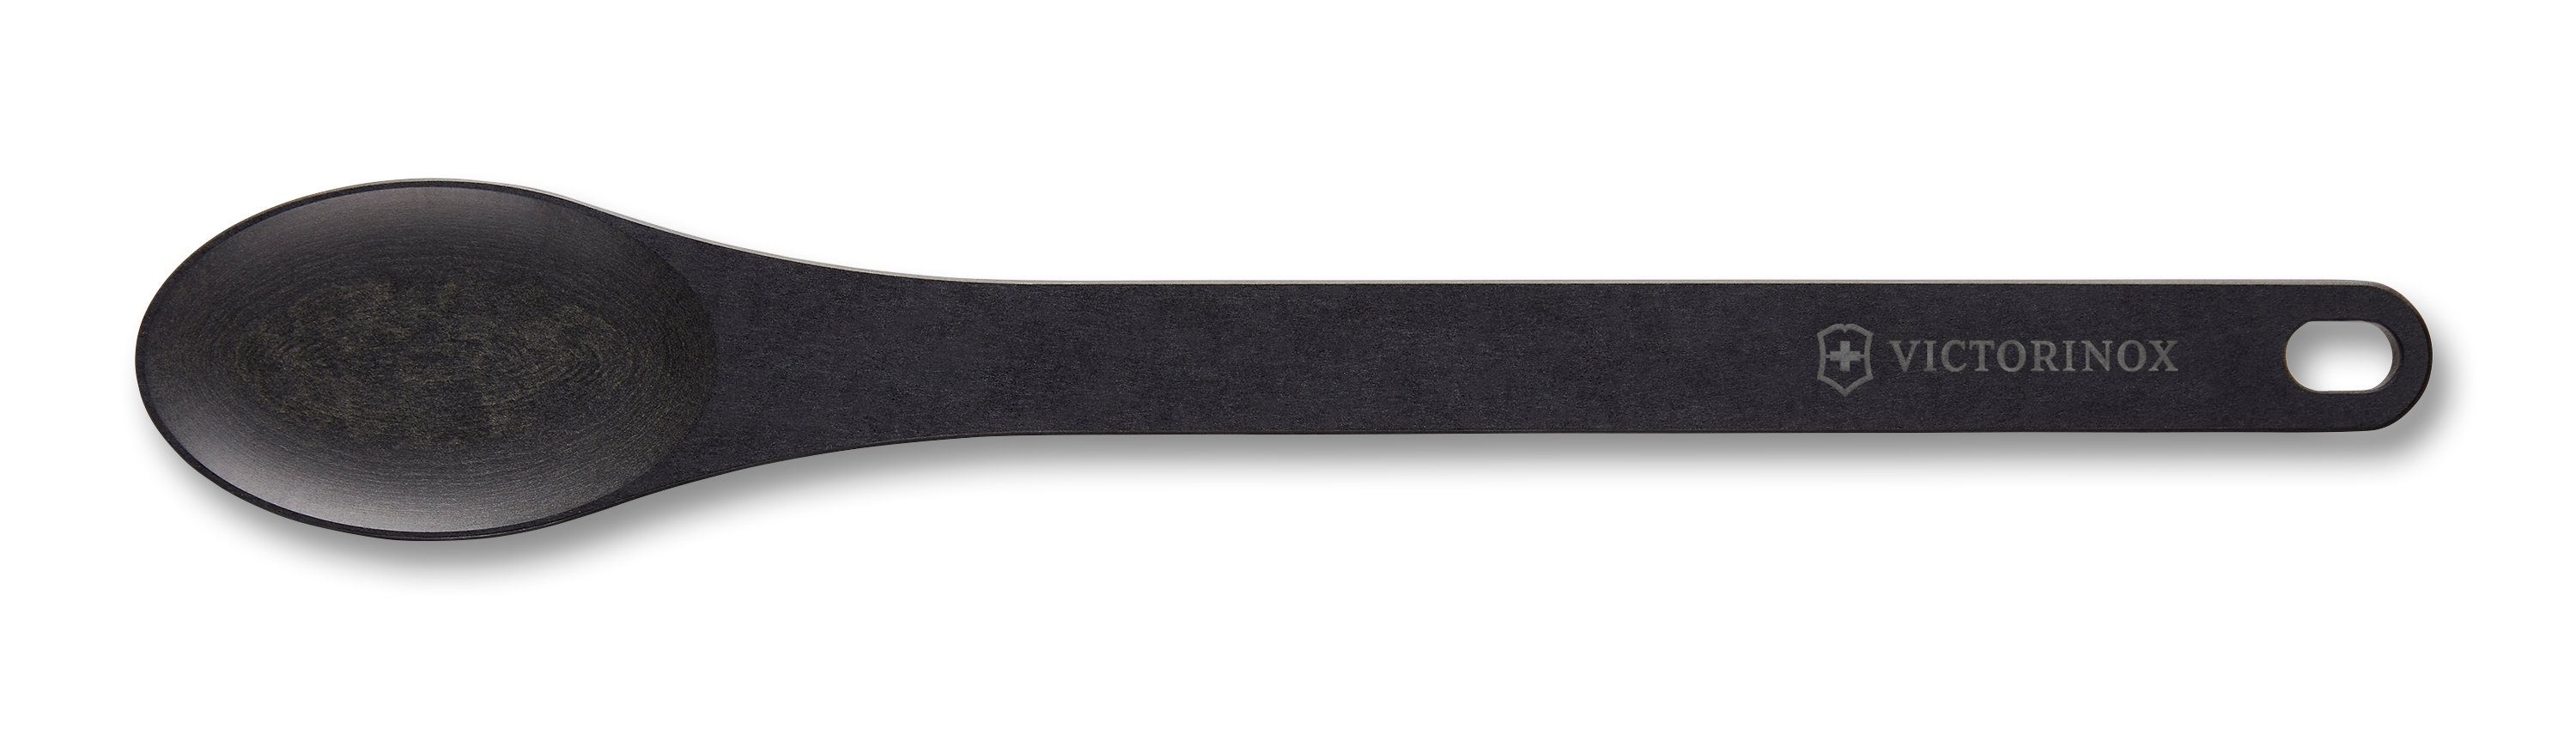 klein, schwarz Victorinox Taschenmesser Kochlöffel